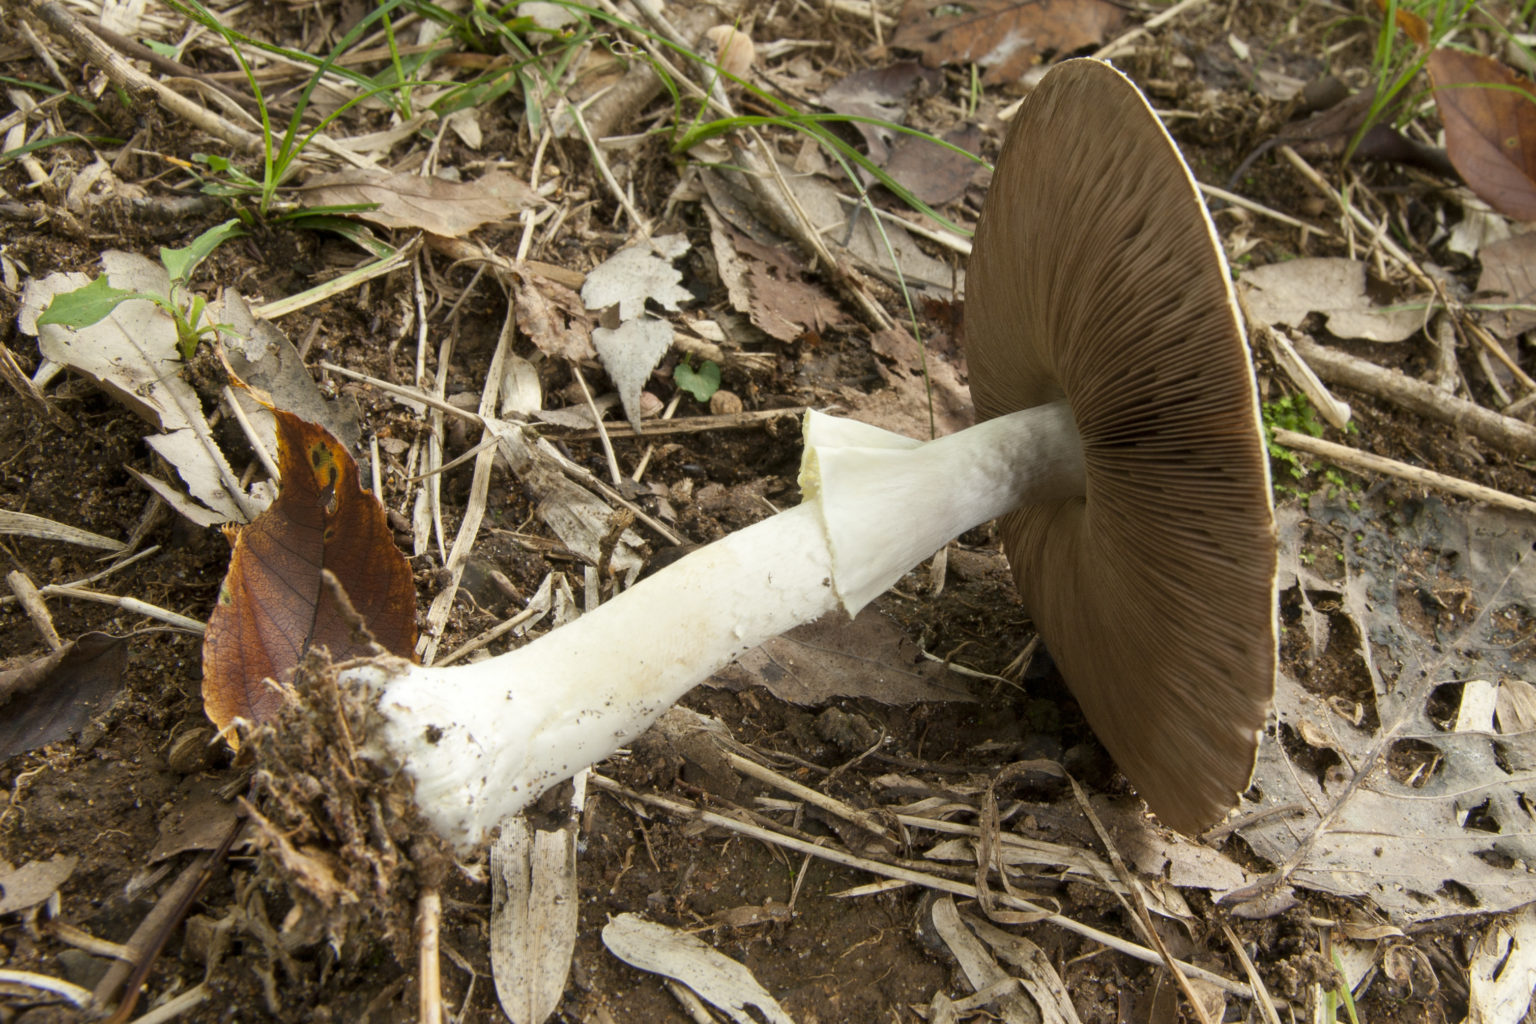 Где растут шампиньоны в дикой природе в россии в лесу и на лугу, как отличить от ложных грибов